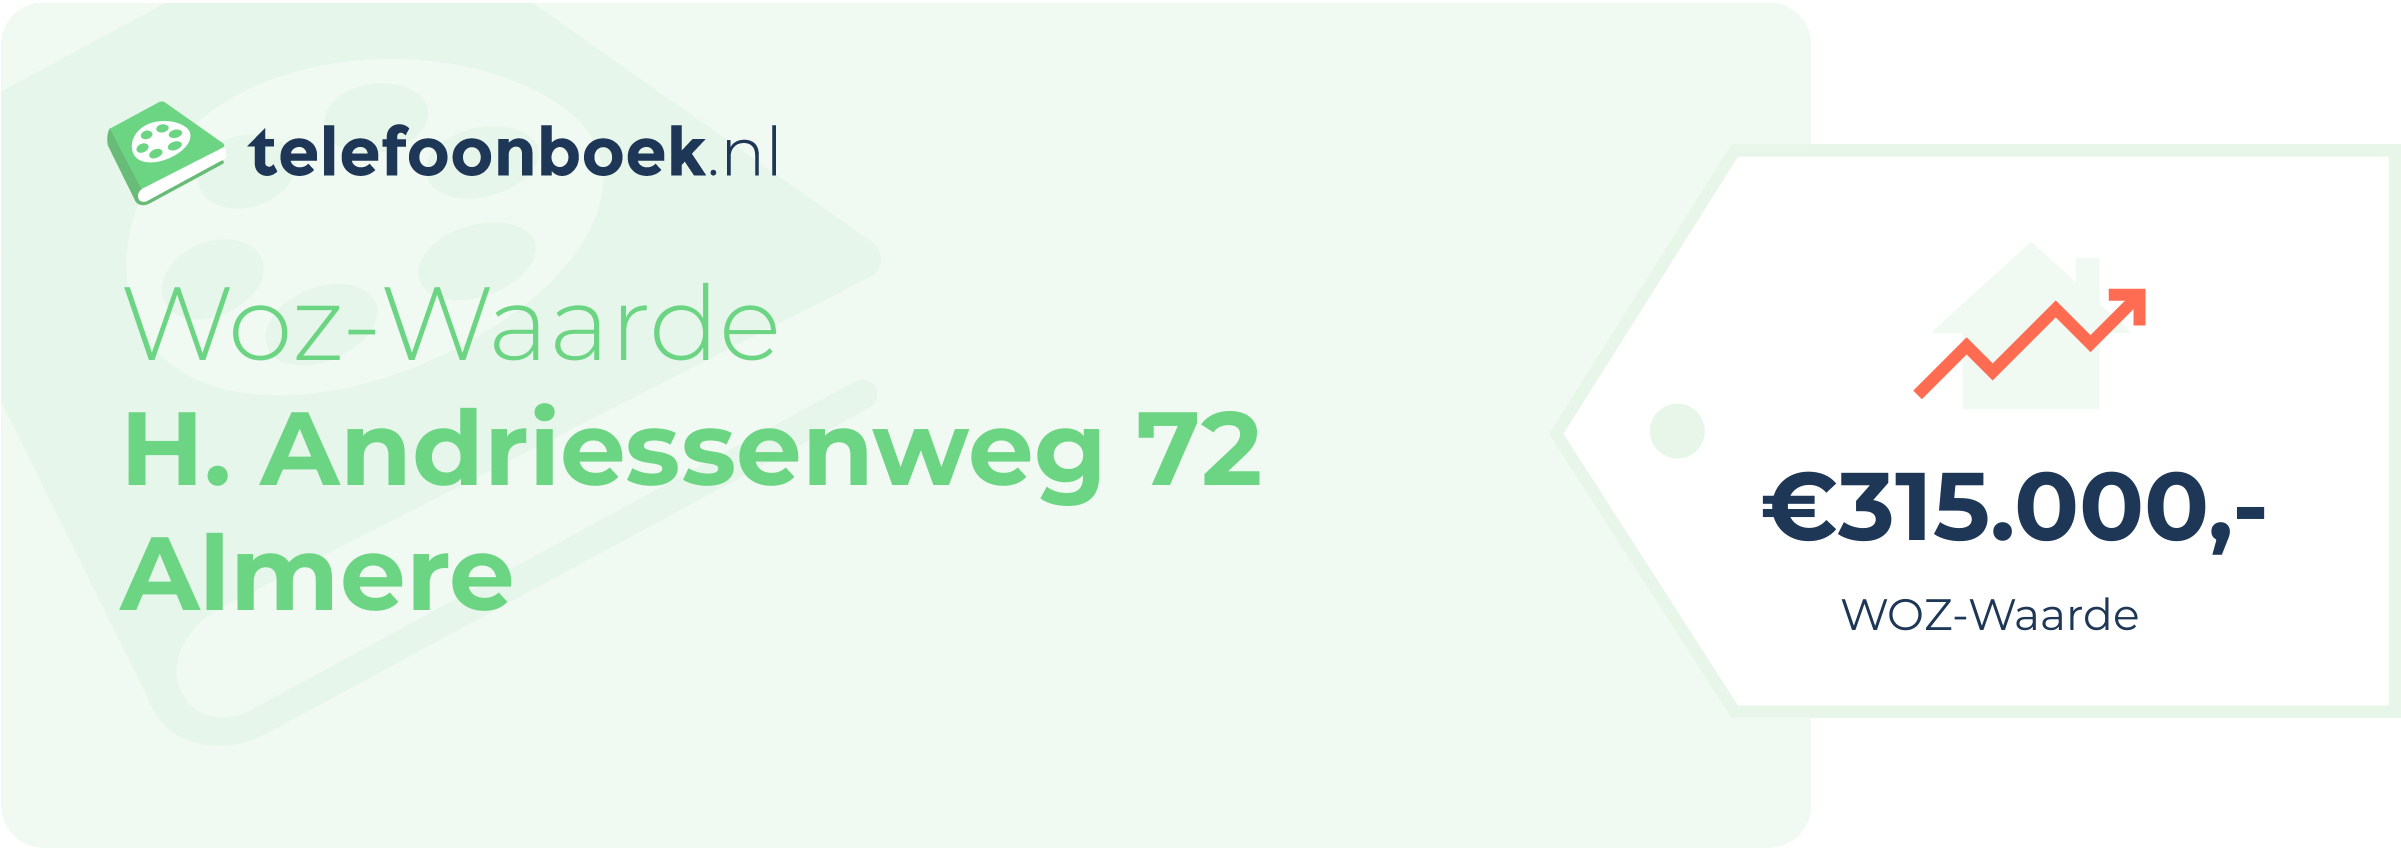 WOZ-waarde H. Andriessenweg 72 Almere